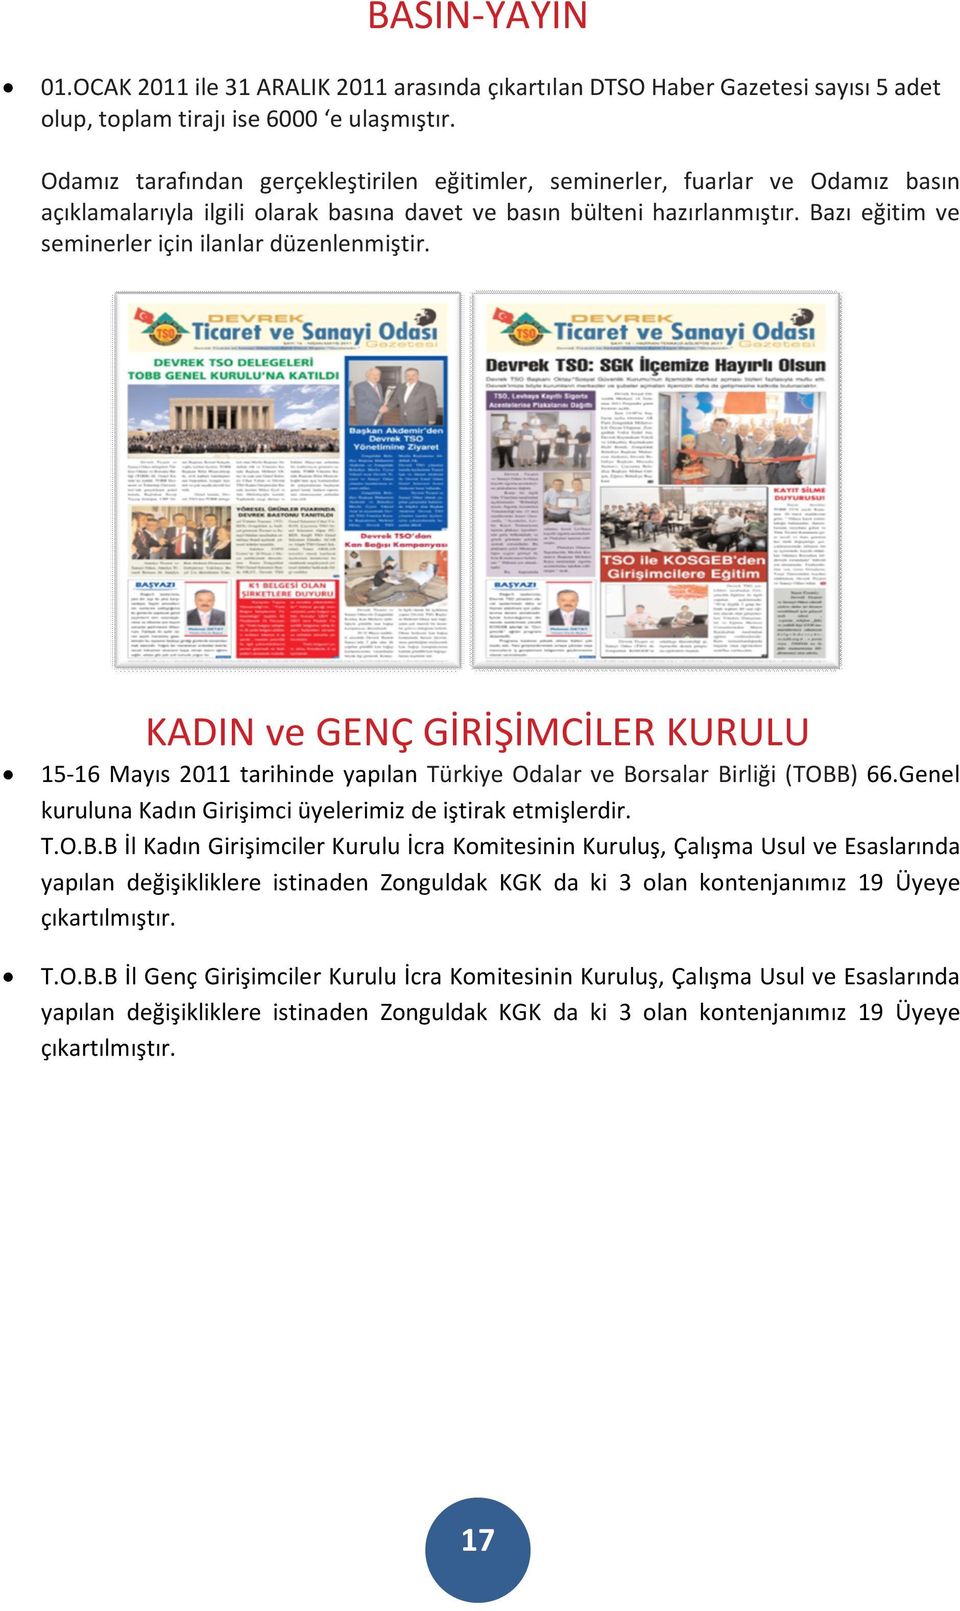 Bazı eğitim ve seminerler için ilanlar düzenlenmiştir. KADIN ve GENÇ GİRİŞİMCİLER KURULU 15-16 Mayıs 2011 tarihinde yapılan Türkiye Odalar ve Borsalar Birliği (TOBB) 66.